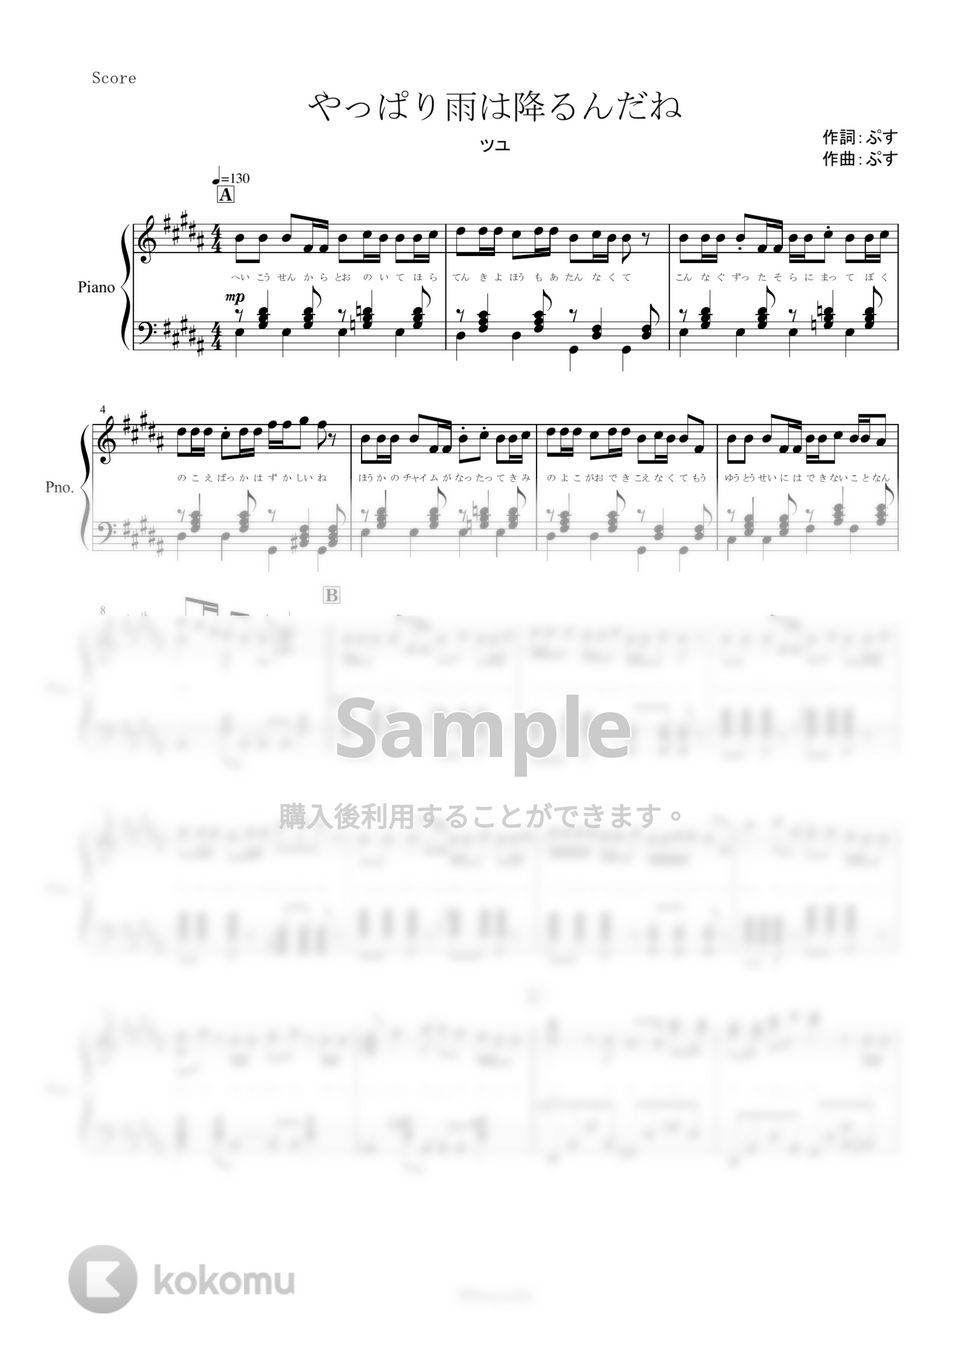 ツユ - やっぱり雨は降るんだね (ピアノ楽譜/全６ページ) by yoshi